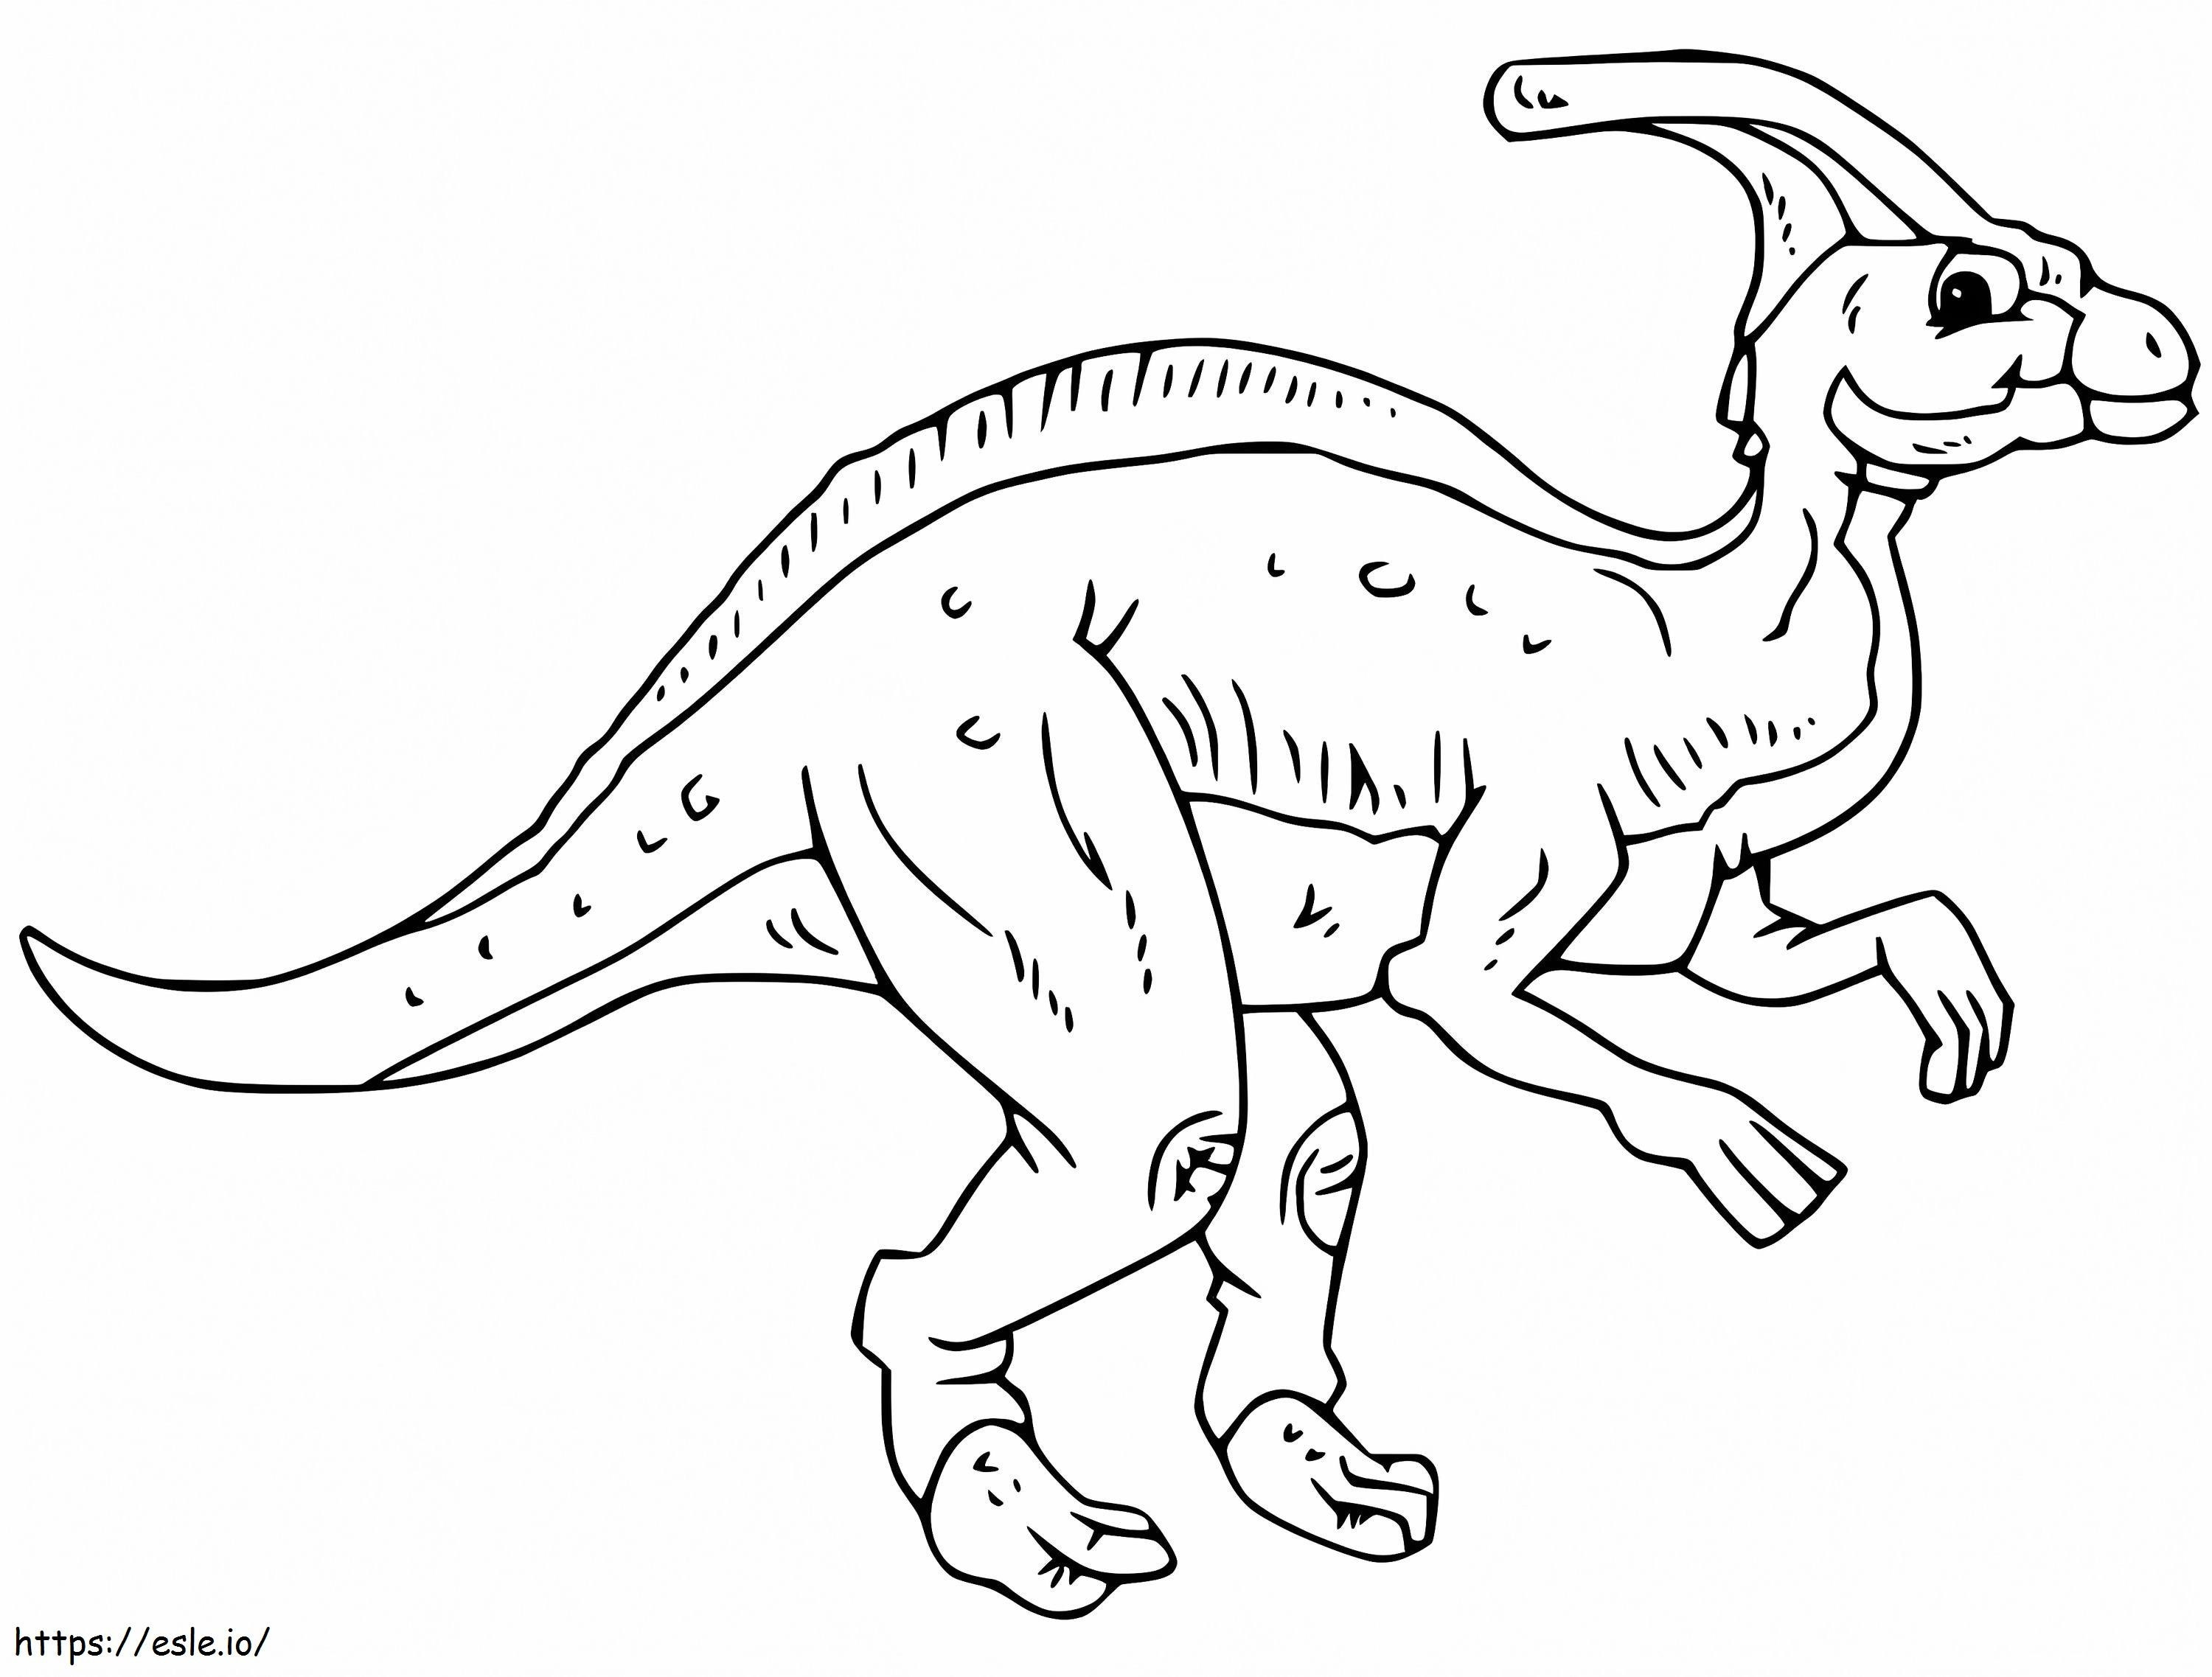 Vecchio Parasaurolofo da colorare